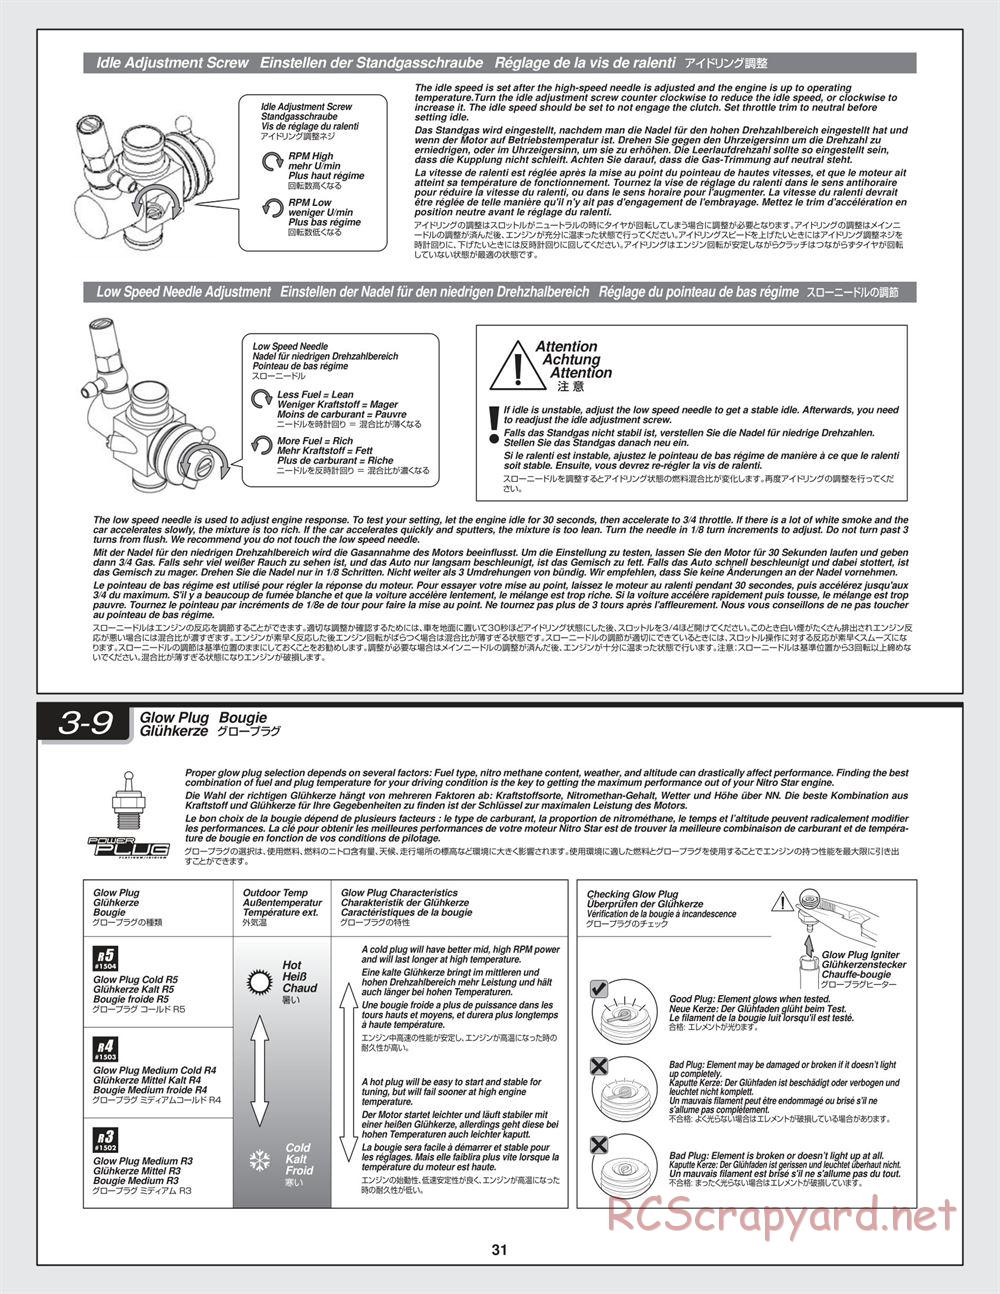 HPI - Bullet MT 3.0 - Manual - Page 31